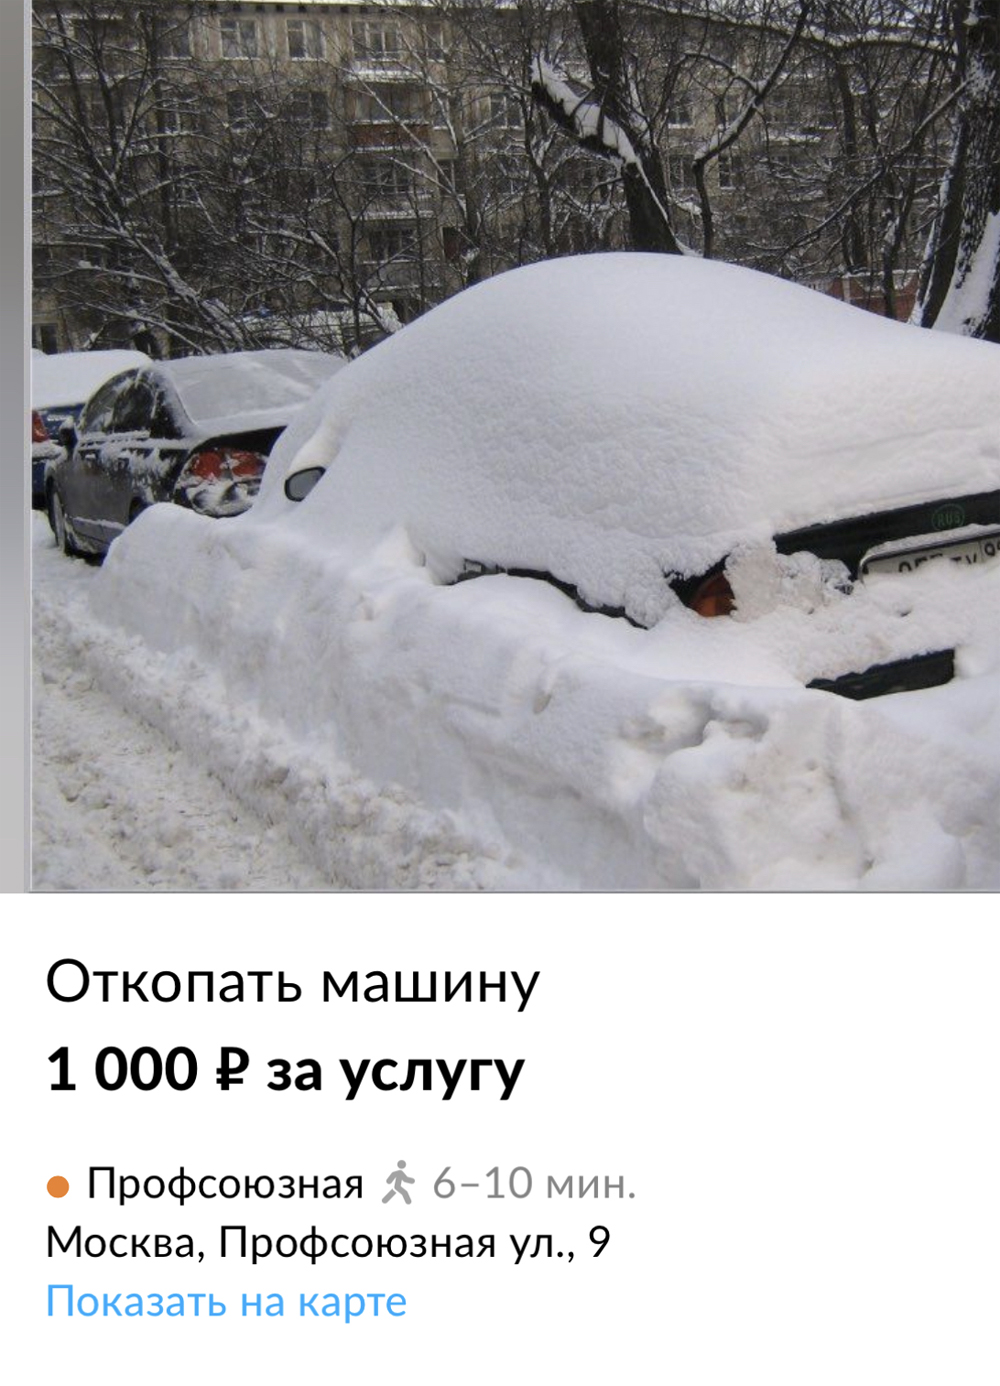 «Откопаю машину. Дорого». В Москве после снегопада появились особые услуги